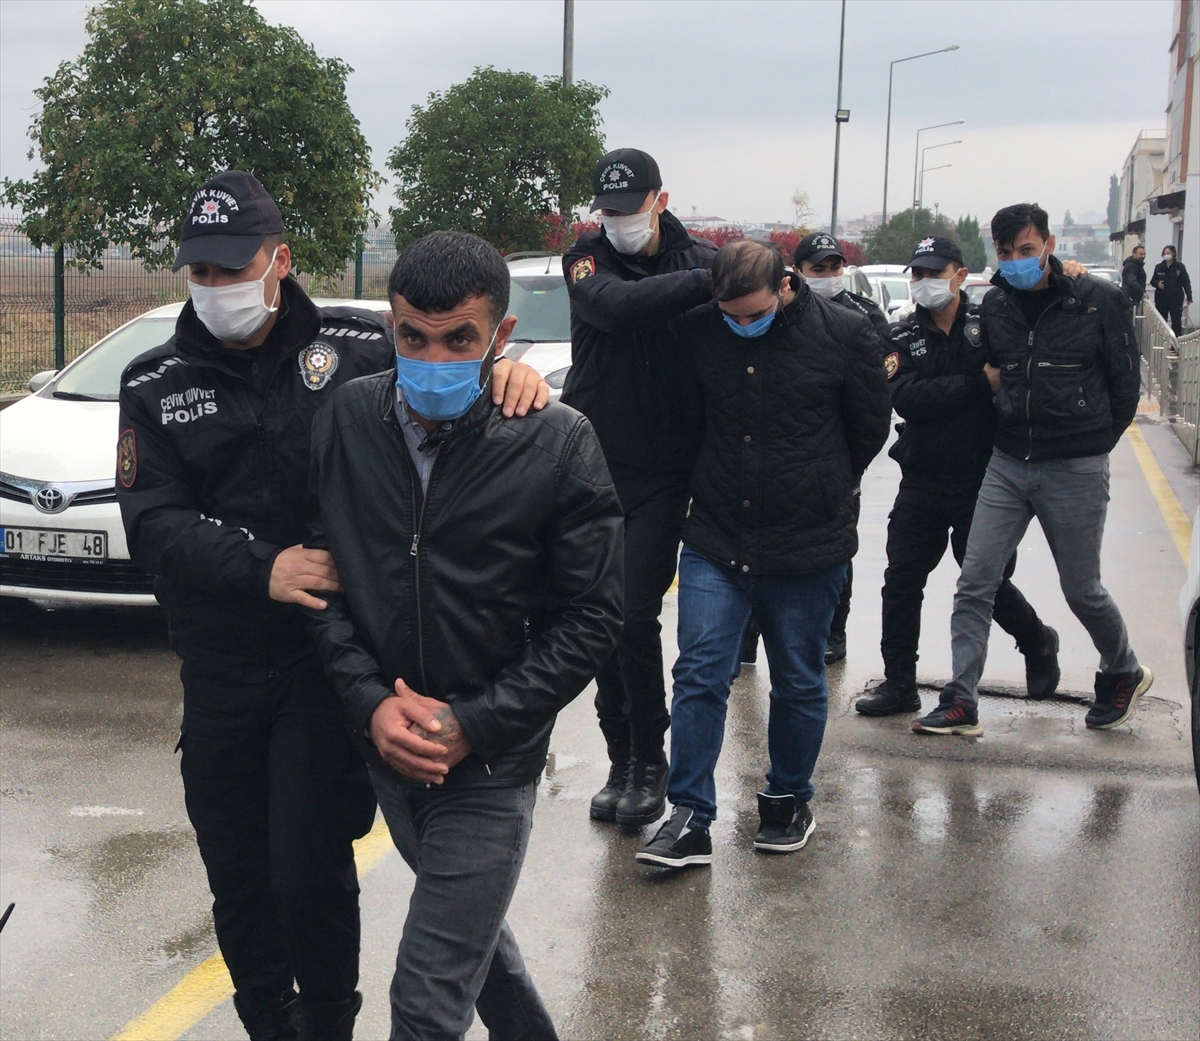 Adana merkezli hırsızlık operasyonunda yakalanan 5 şüpheli tutuklandı